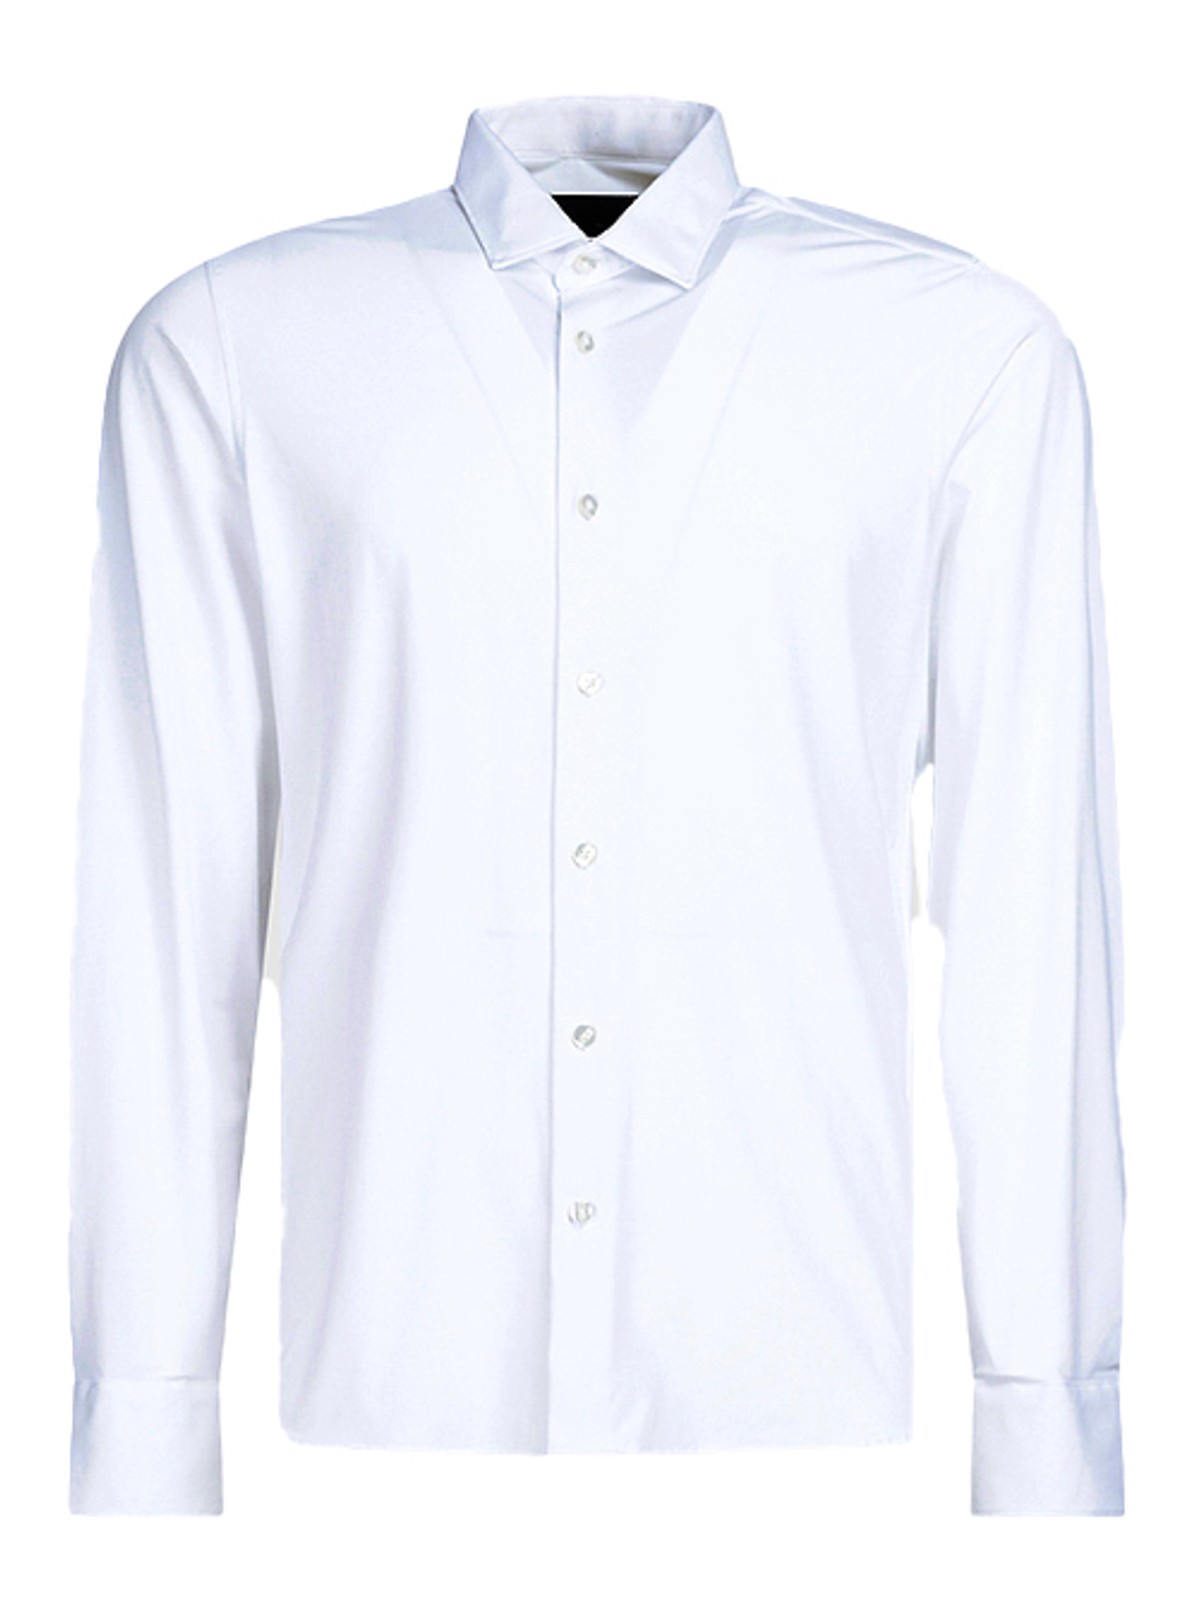 Rrd Roberto Ricci Designs Oxford Open Shirt In White